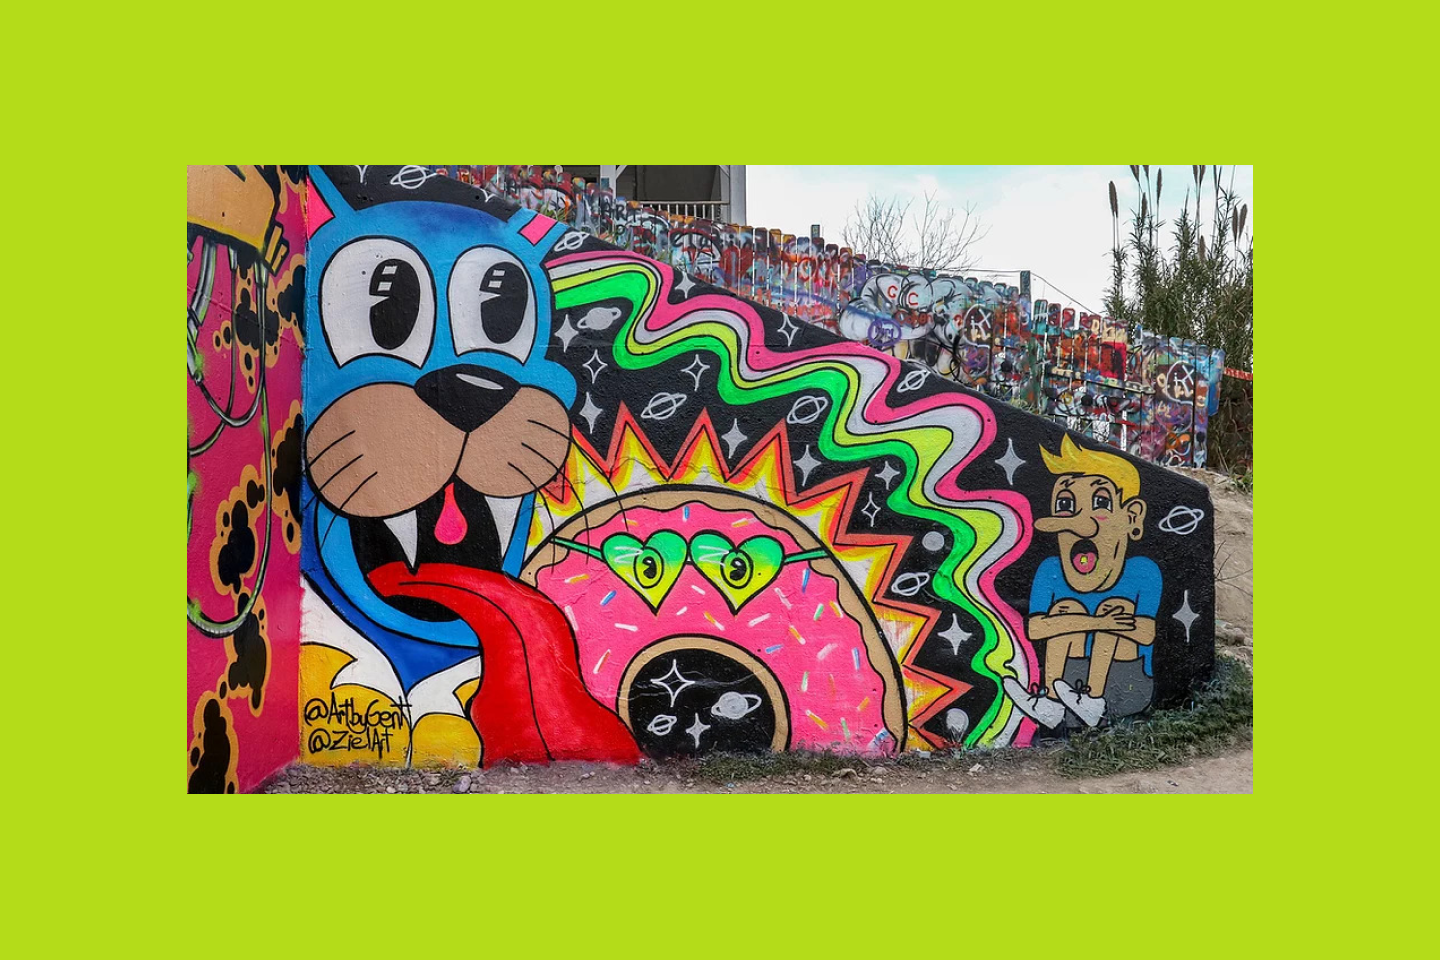 dinding seni grafiti bergambar kucing neon, donat, dan orang